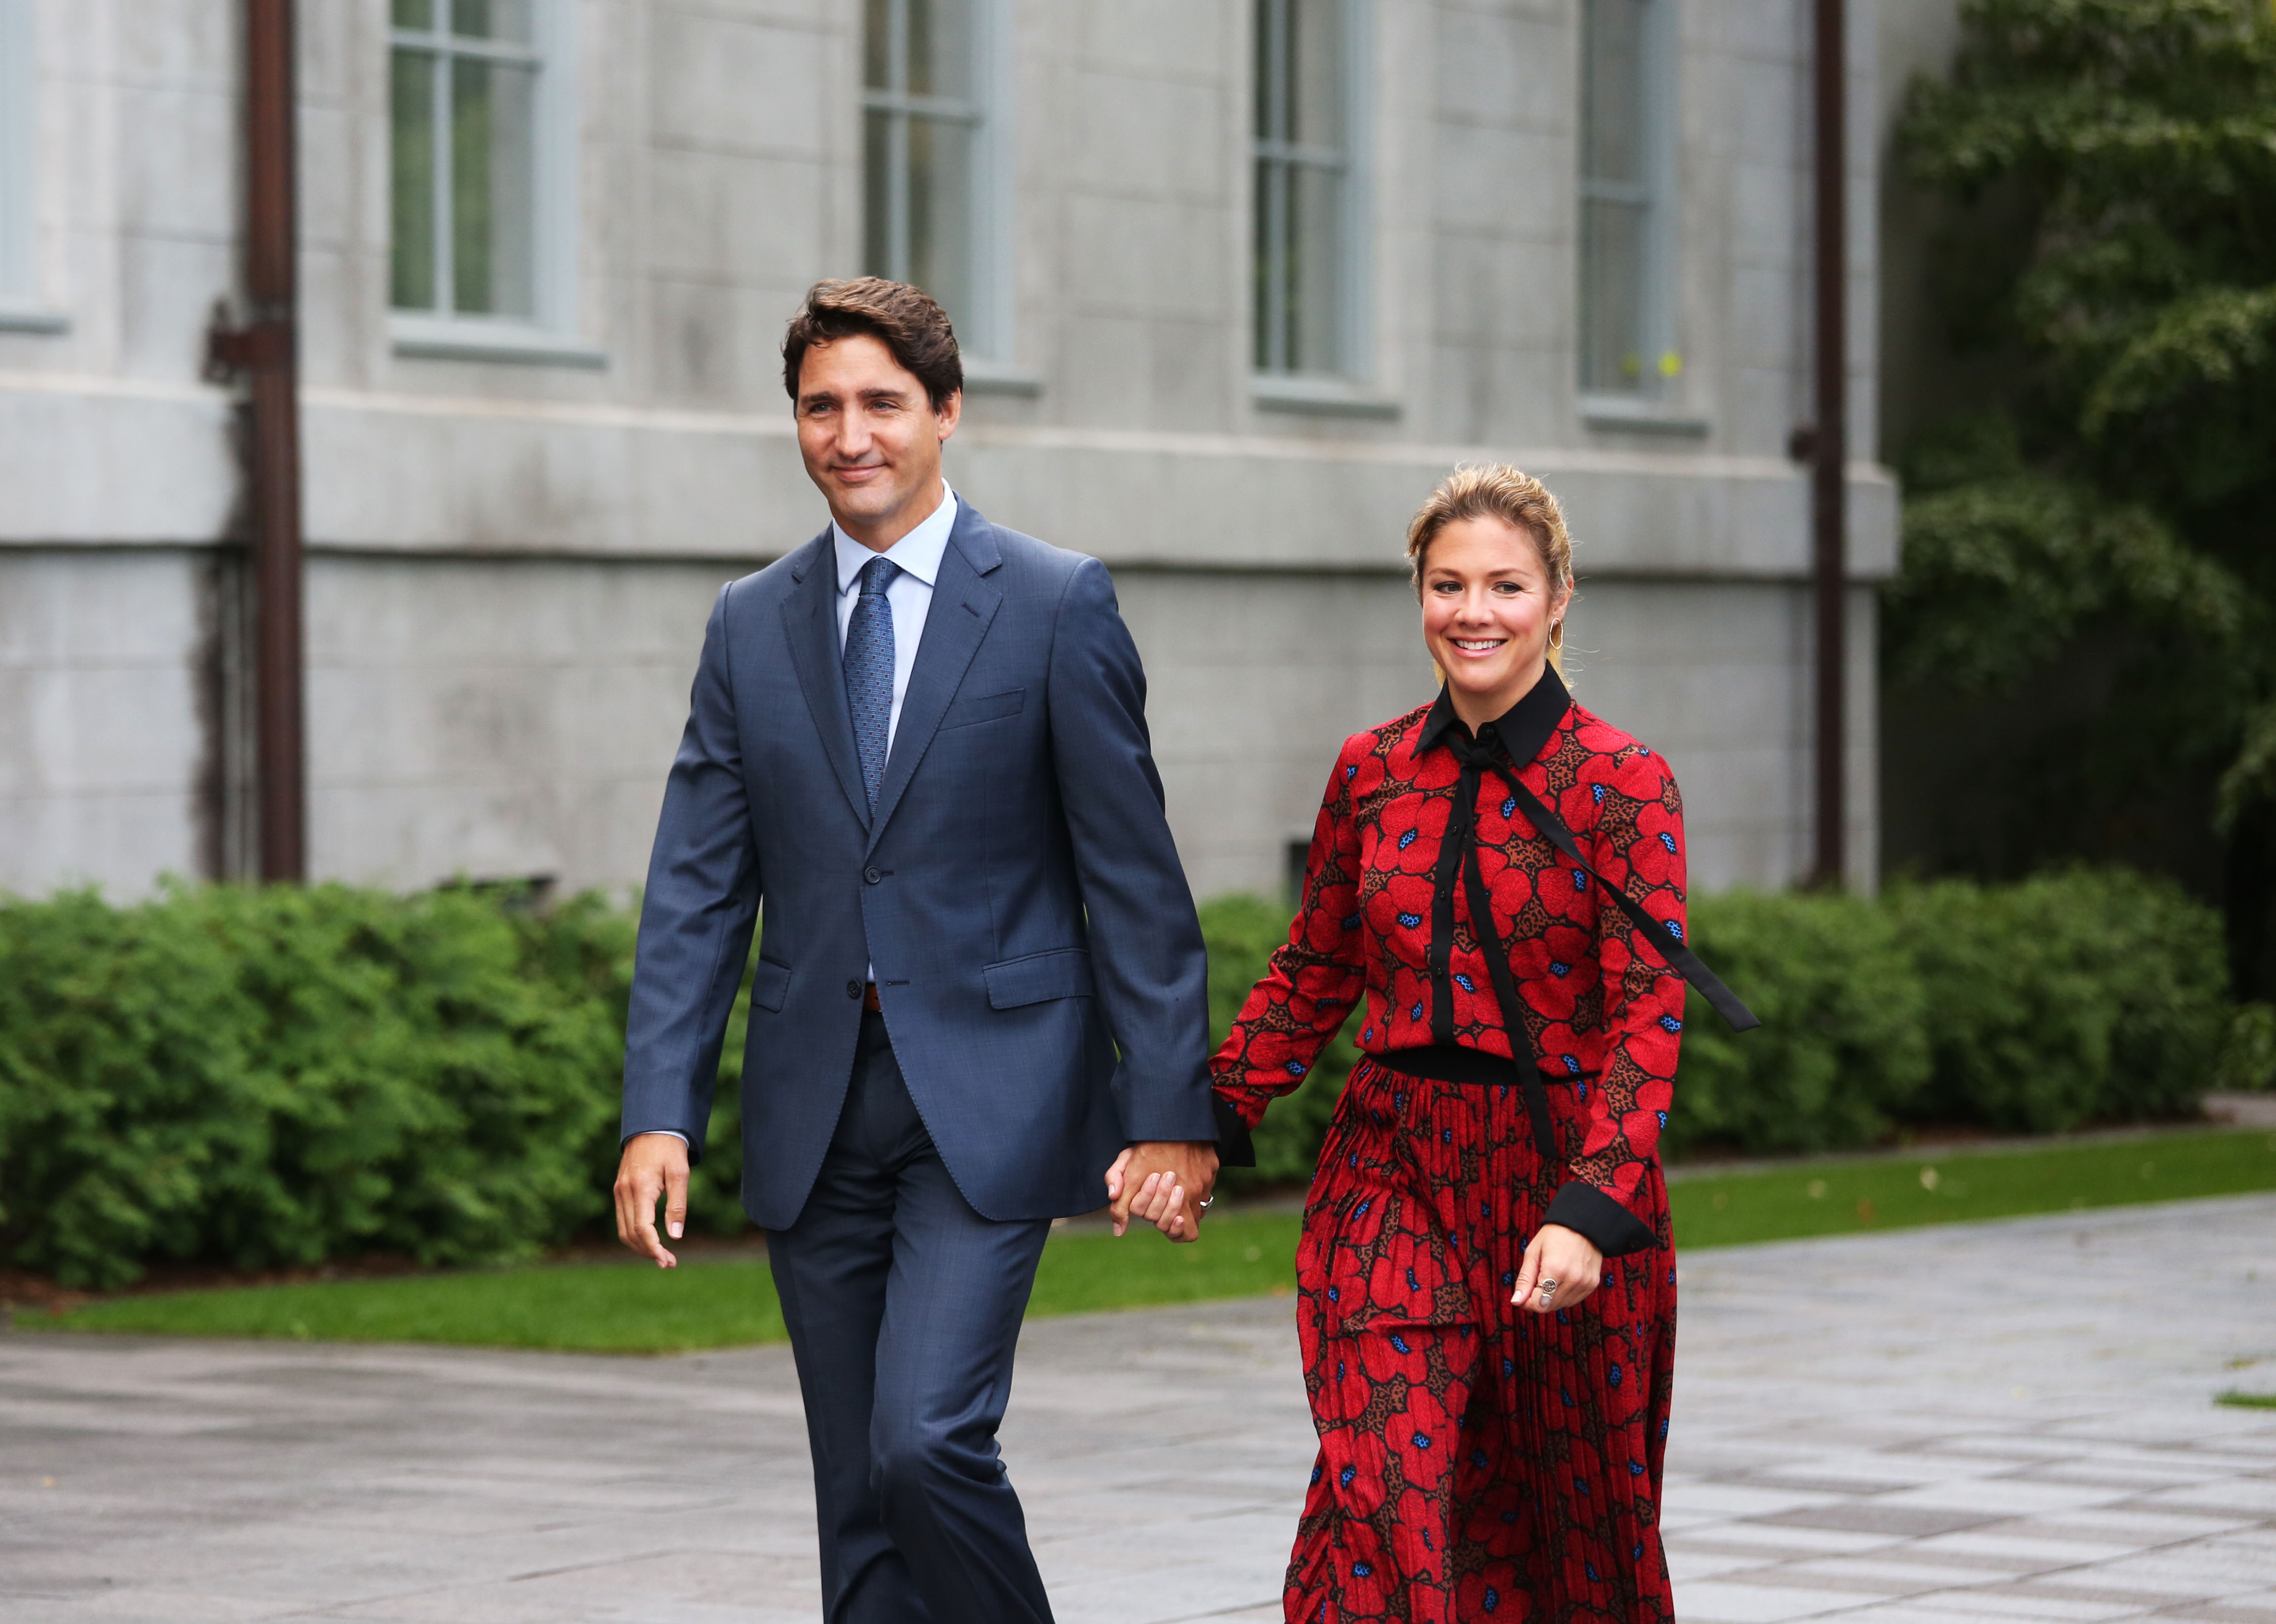 加拿大总理夫人确诊感染新冠肺炎